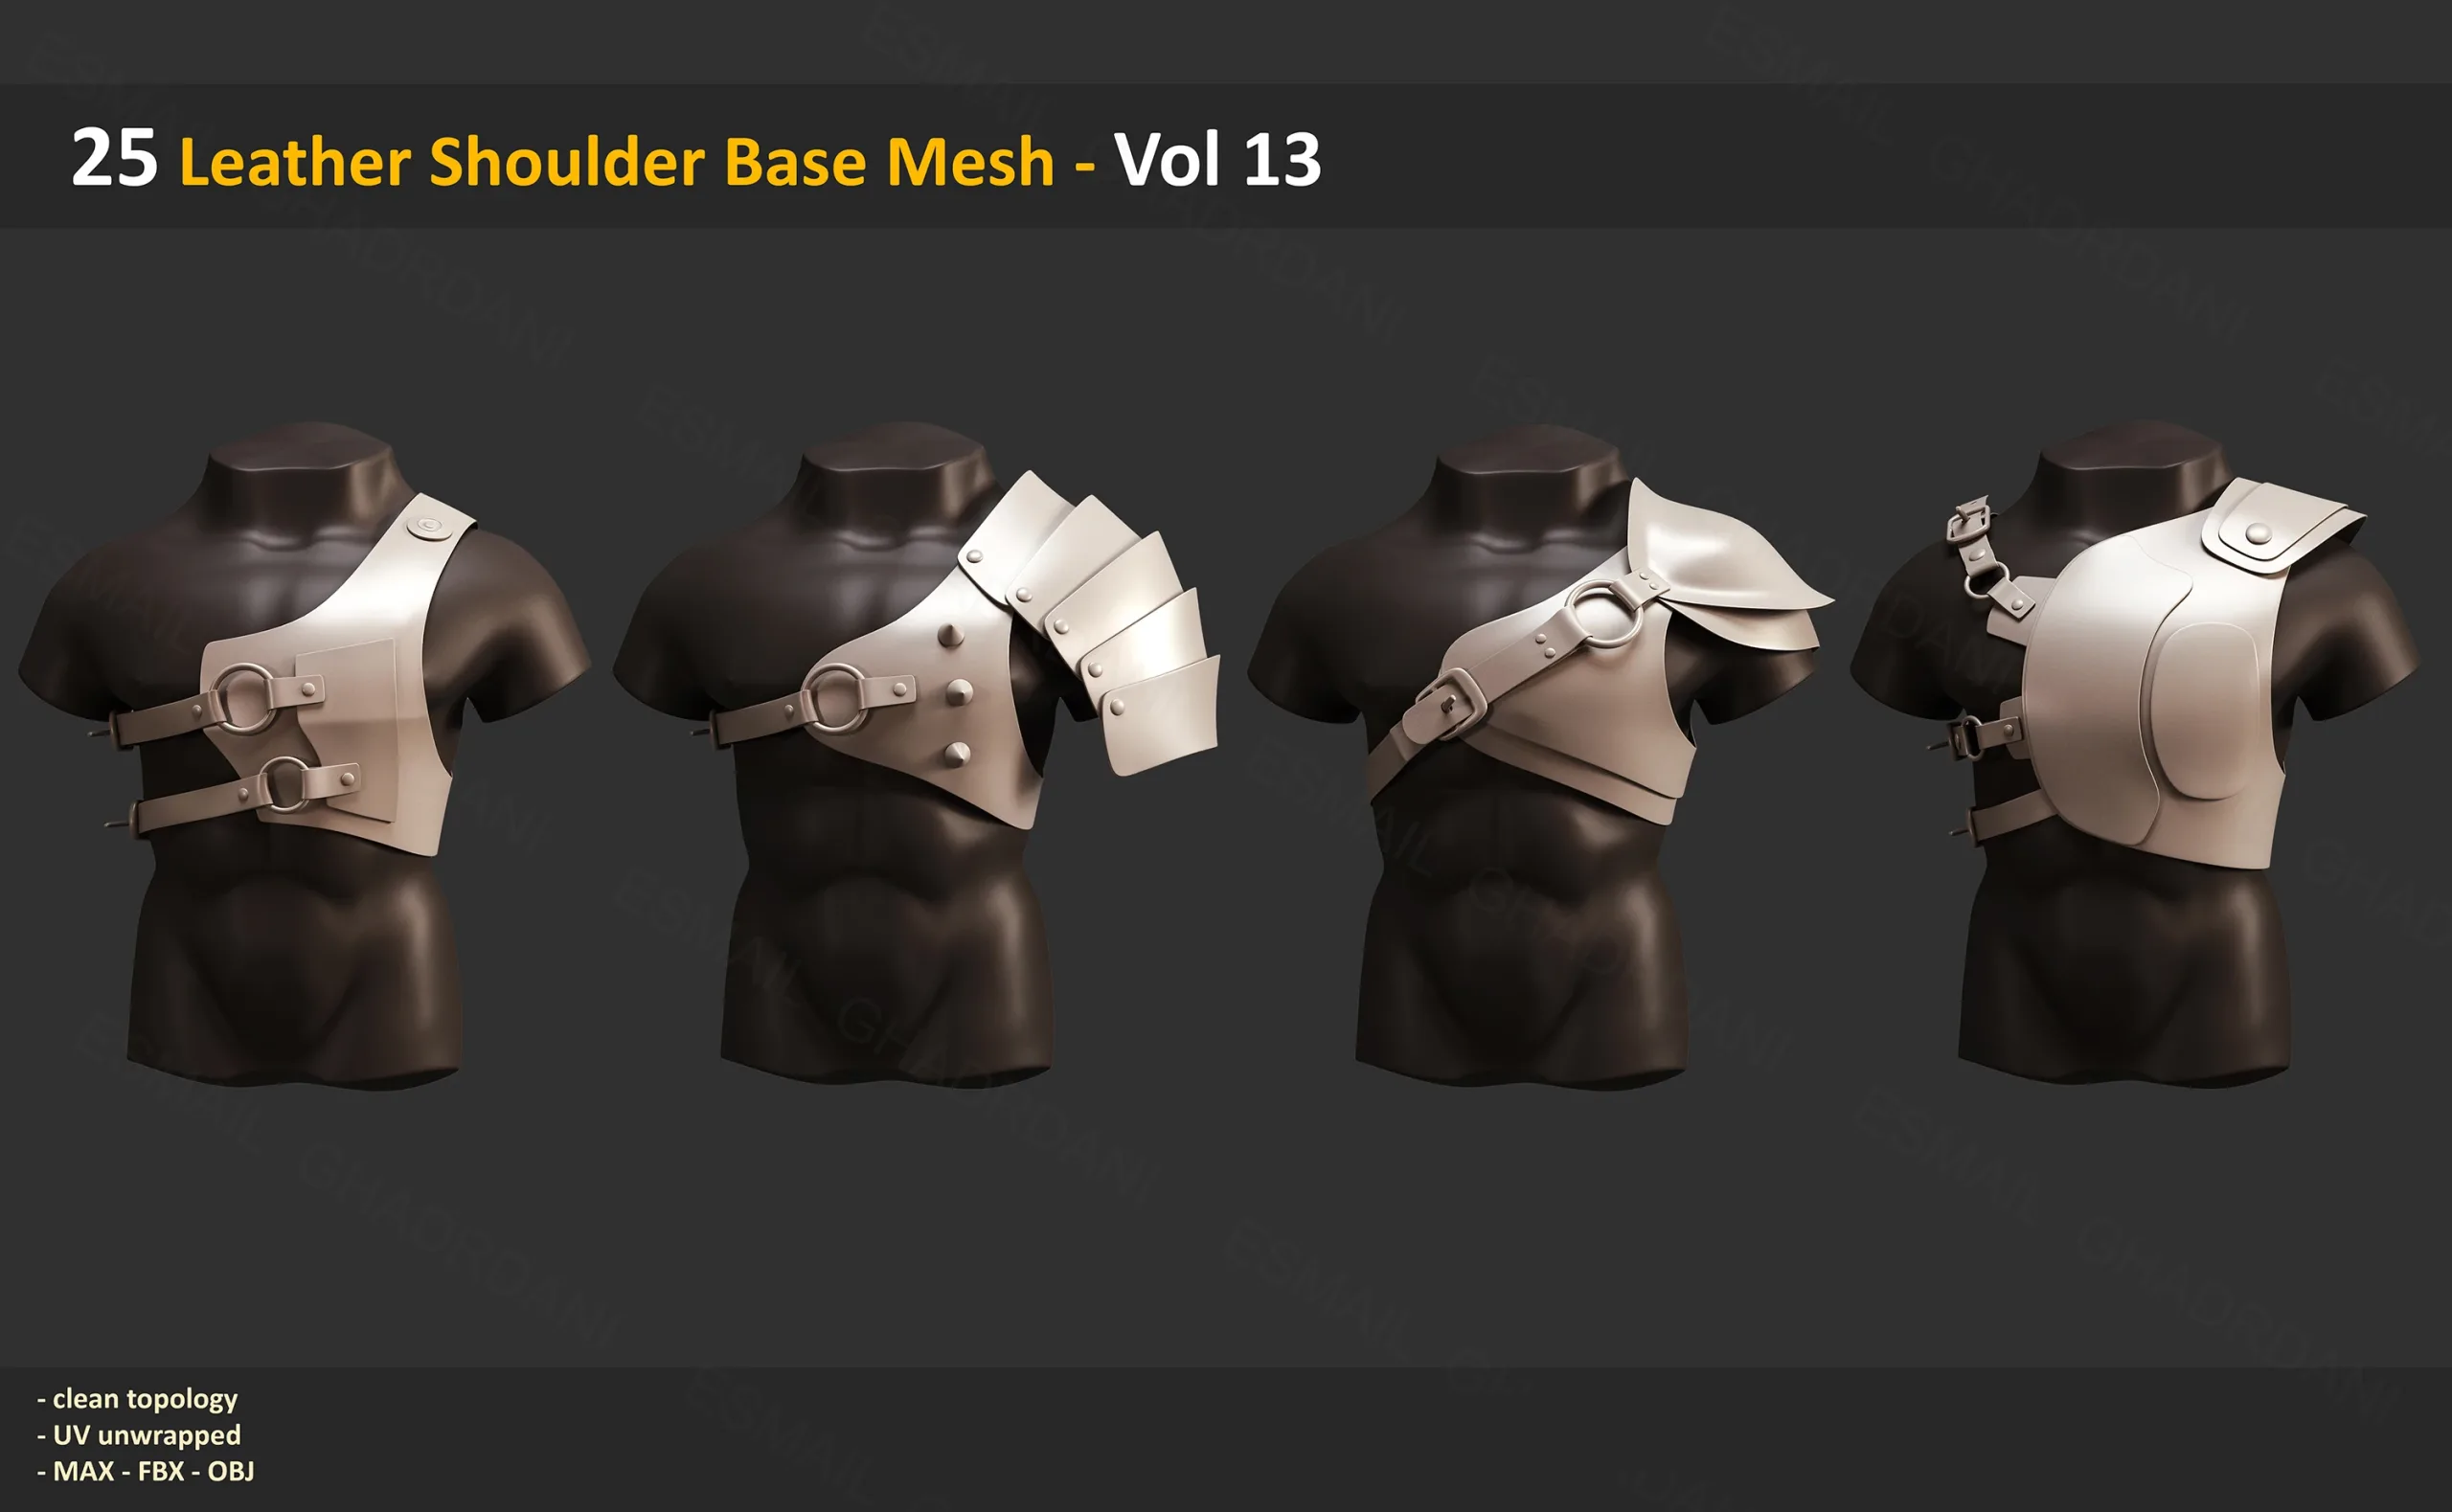 25 Leather Shoulder Base Mesh - Vol 13